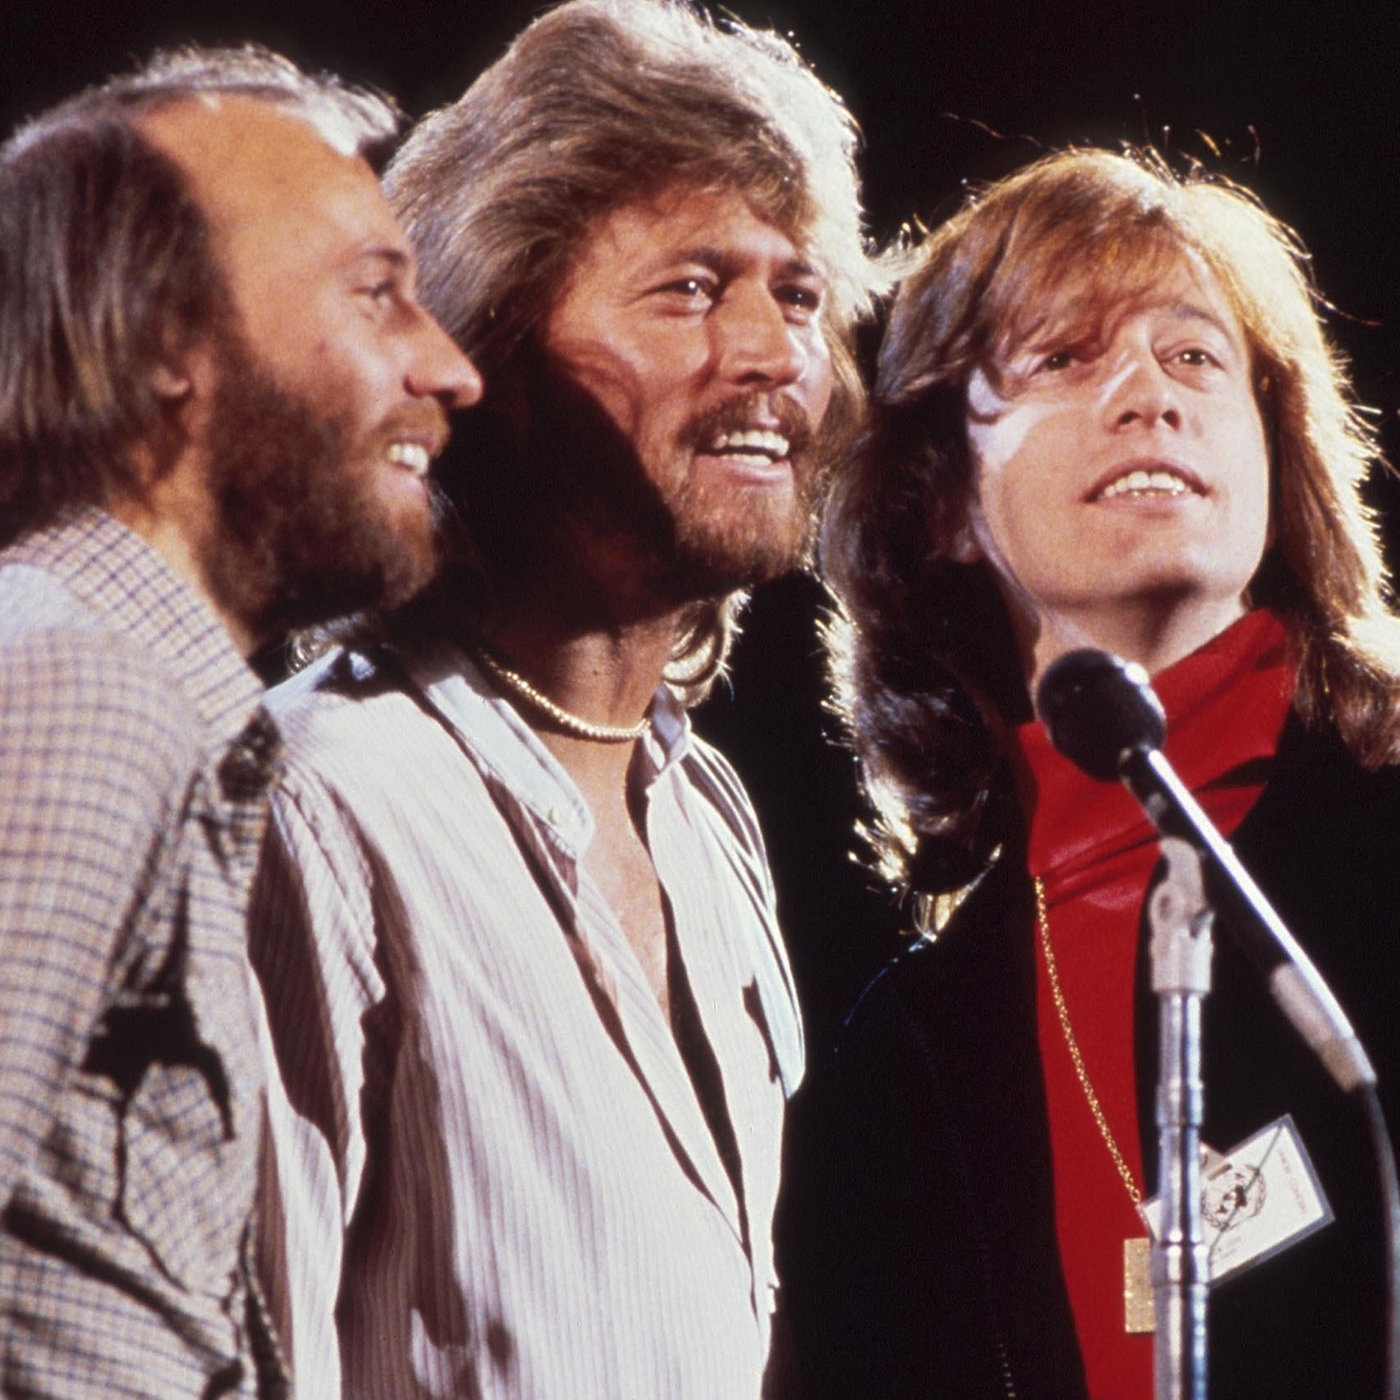 Un 23 de febrero de 2002, los Bee Gees daban el último concierto de su historia en el Love and Hope Ball de Miami Beach, Florida